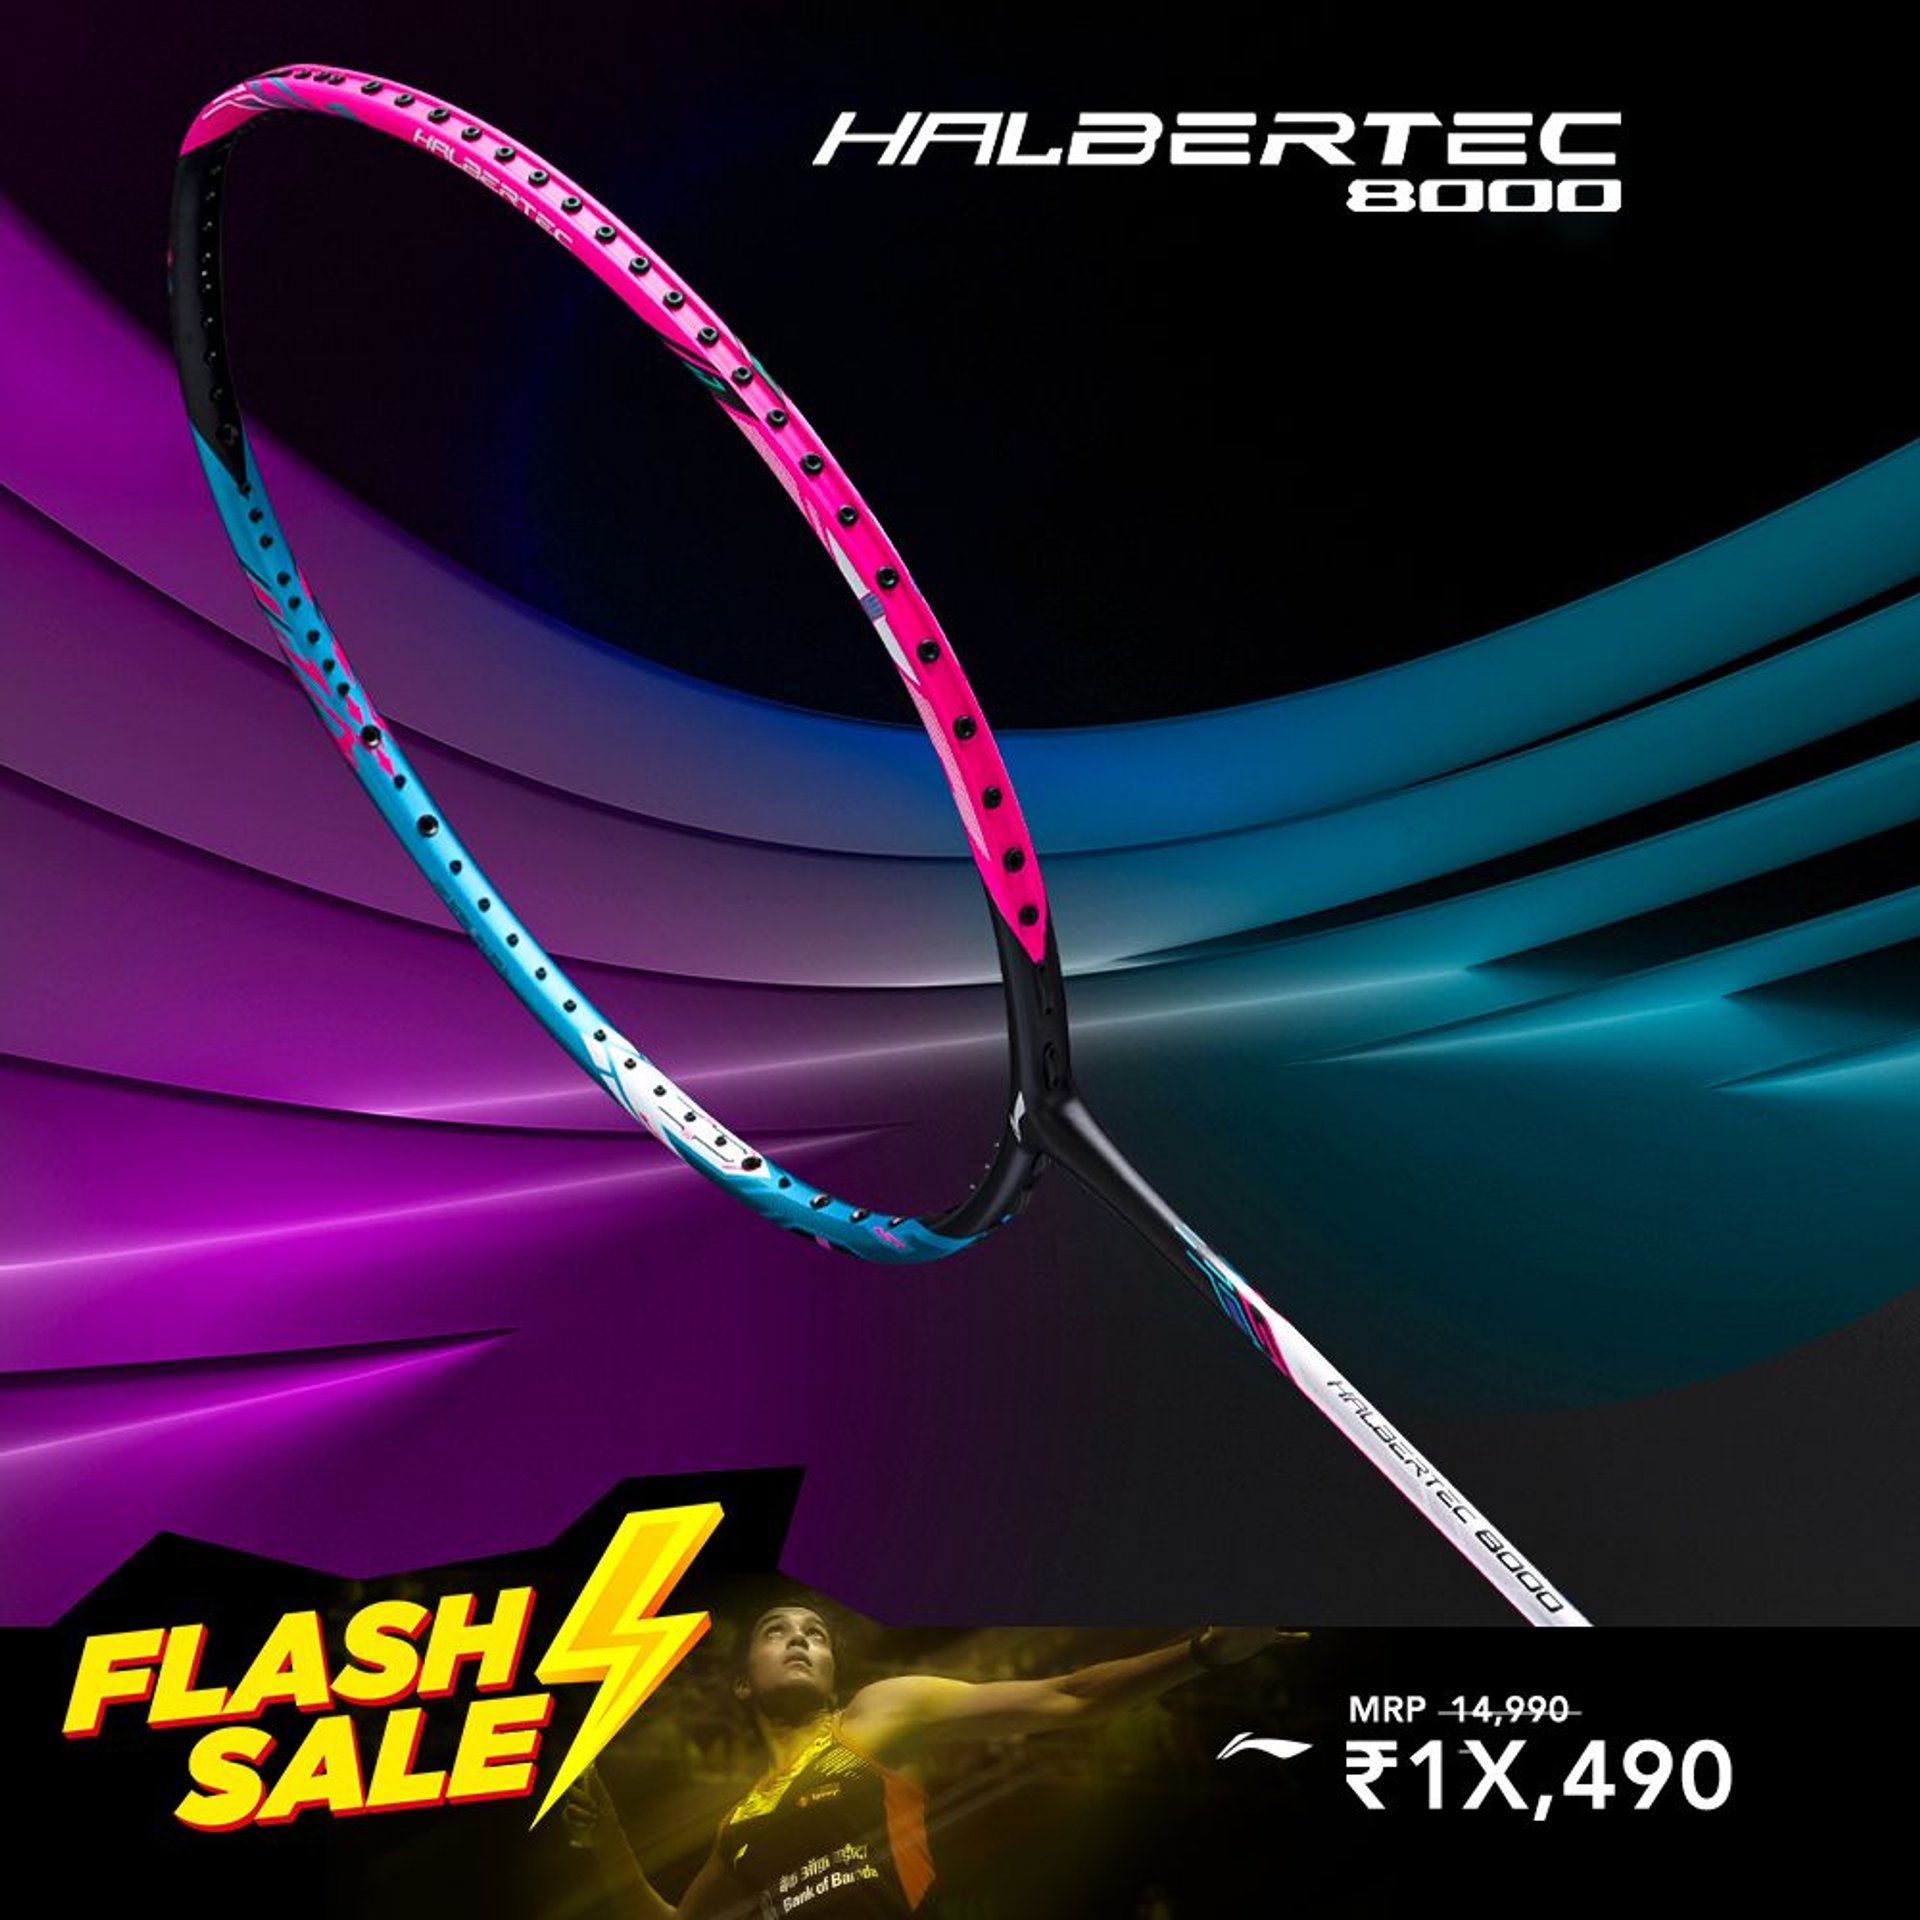 Halbertec 8000 - Badminton Racket